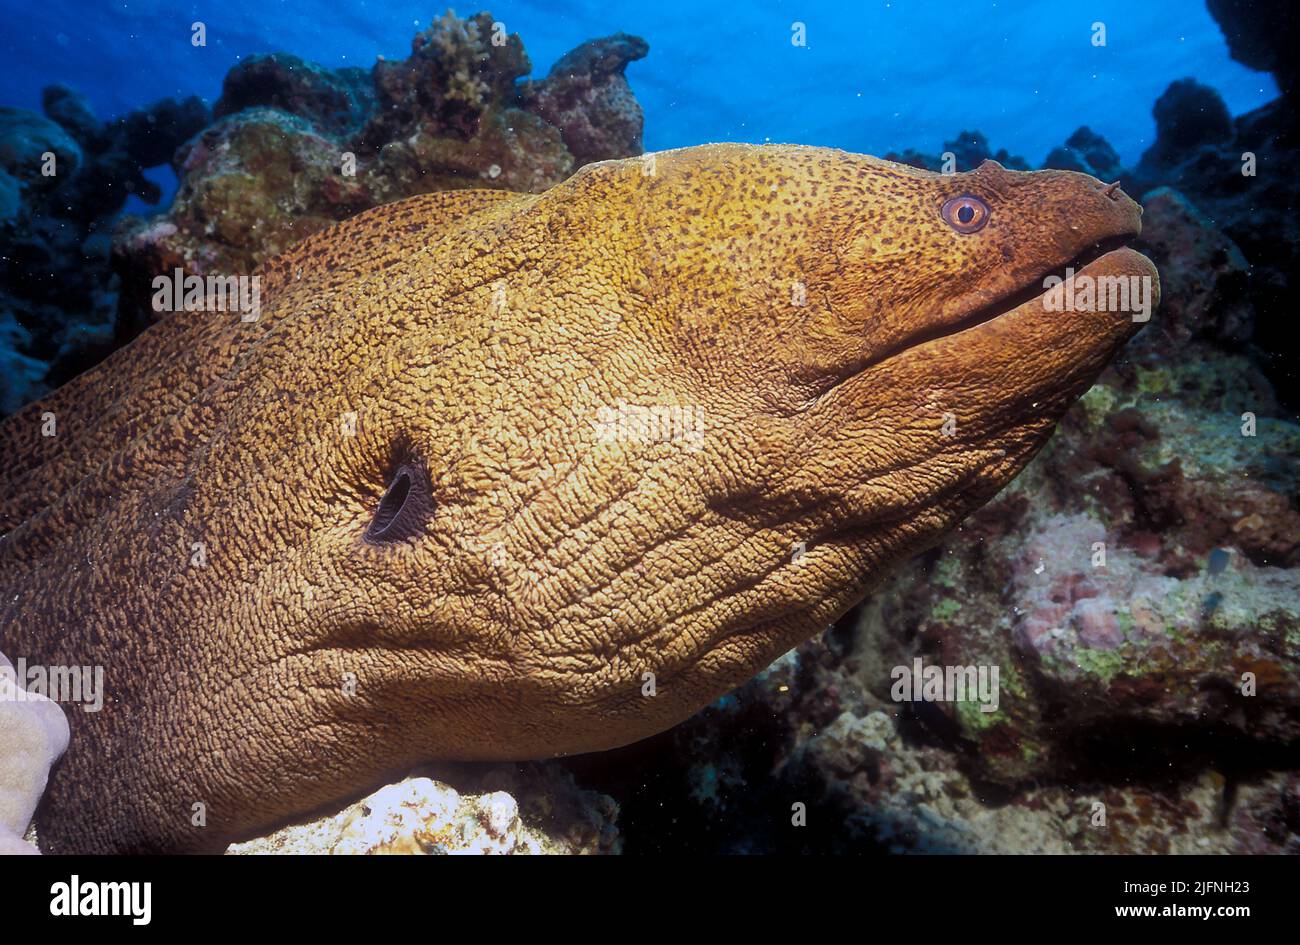 E der Riese Morey Eel (Gymnothorax javanicus) kann 2,5 Meter lang werden. Foto vom Great Barrier Reef, Australien. Stockfoto